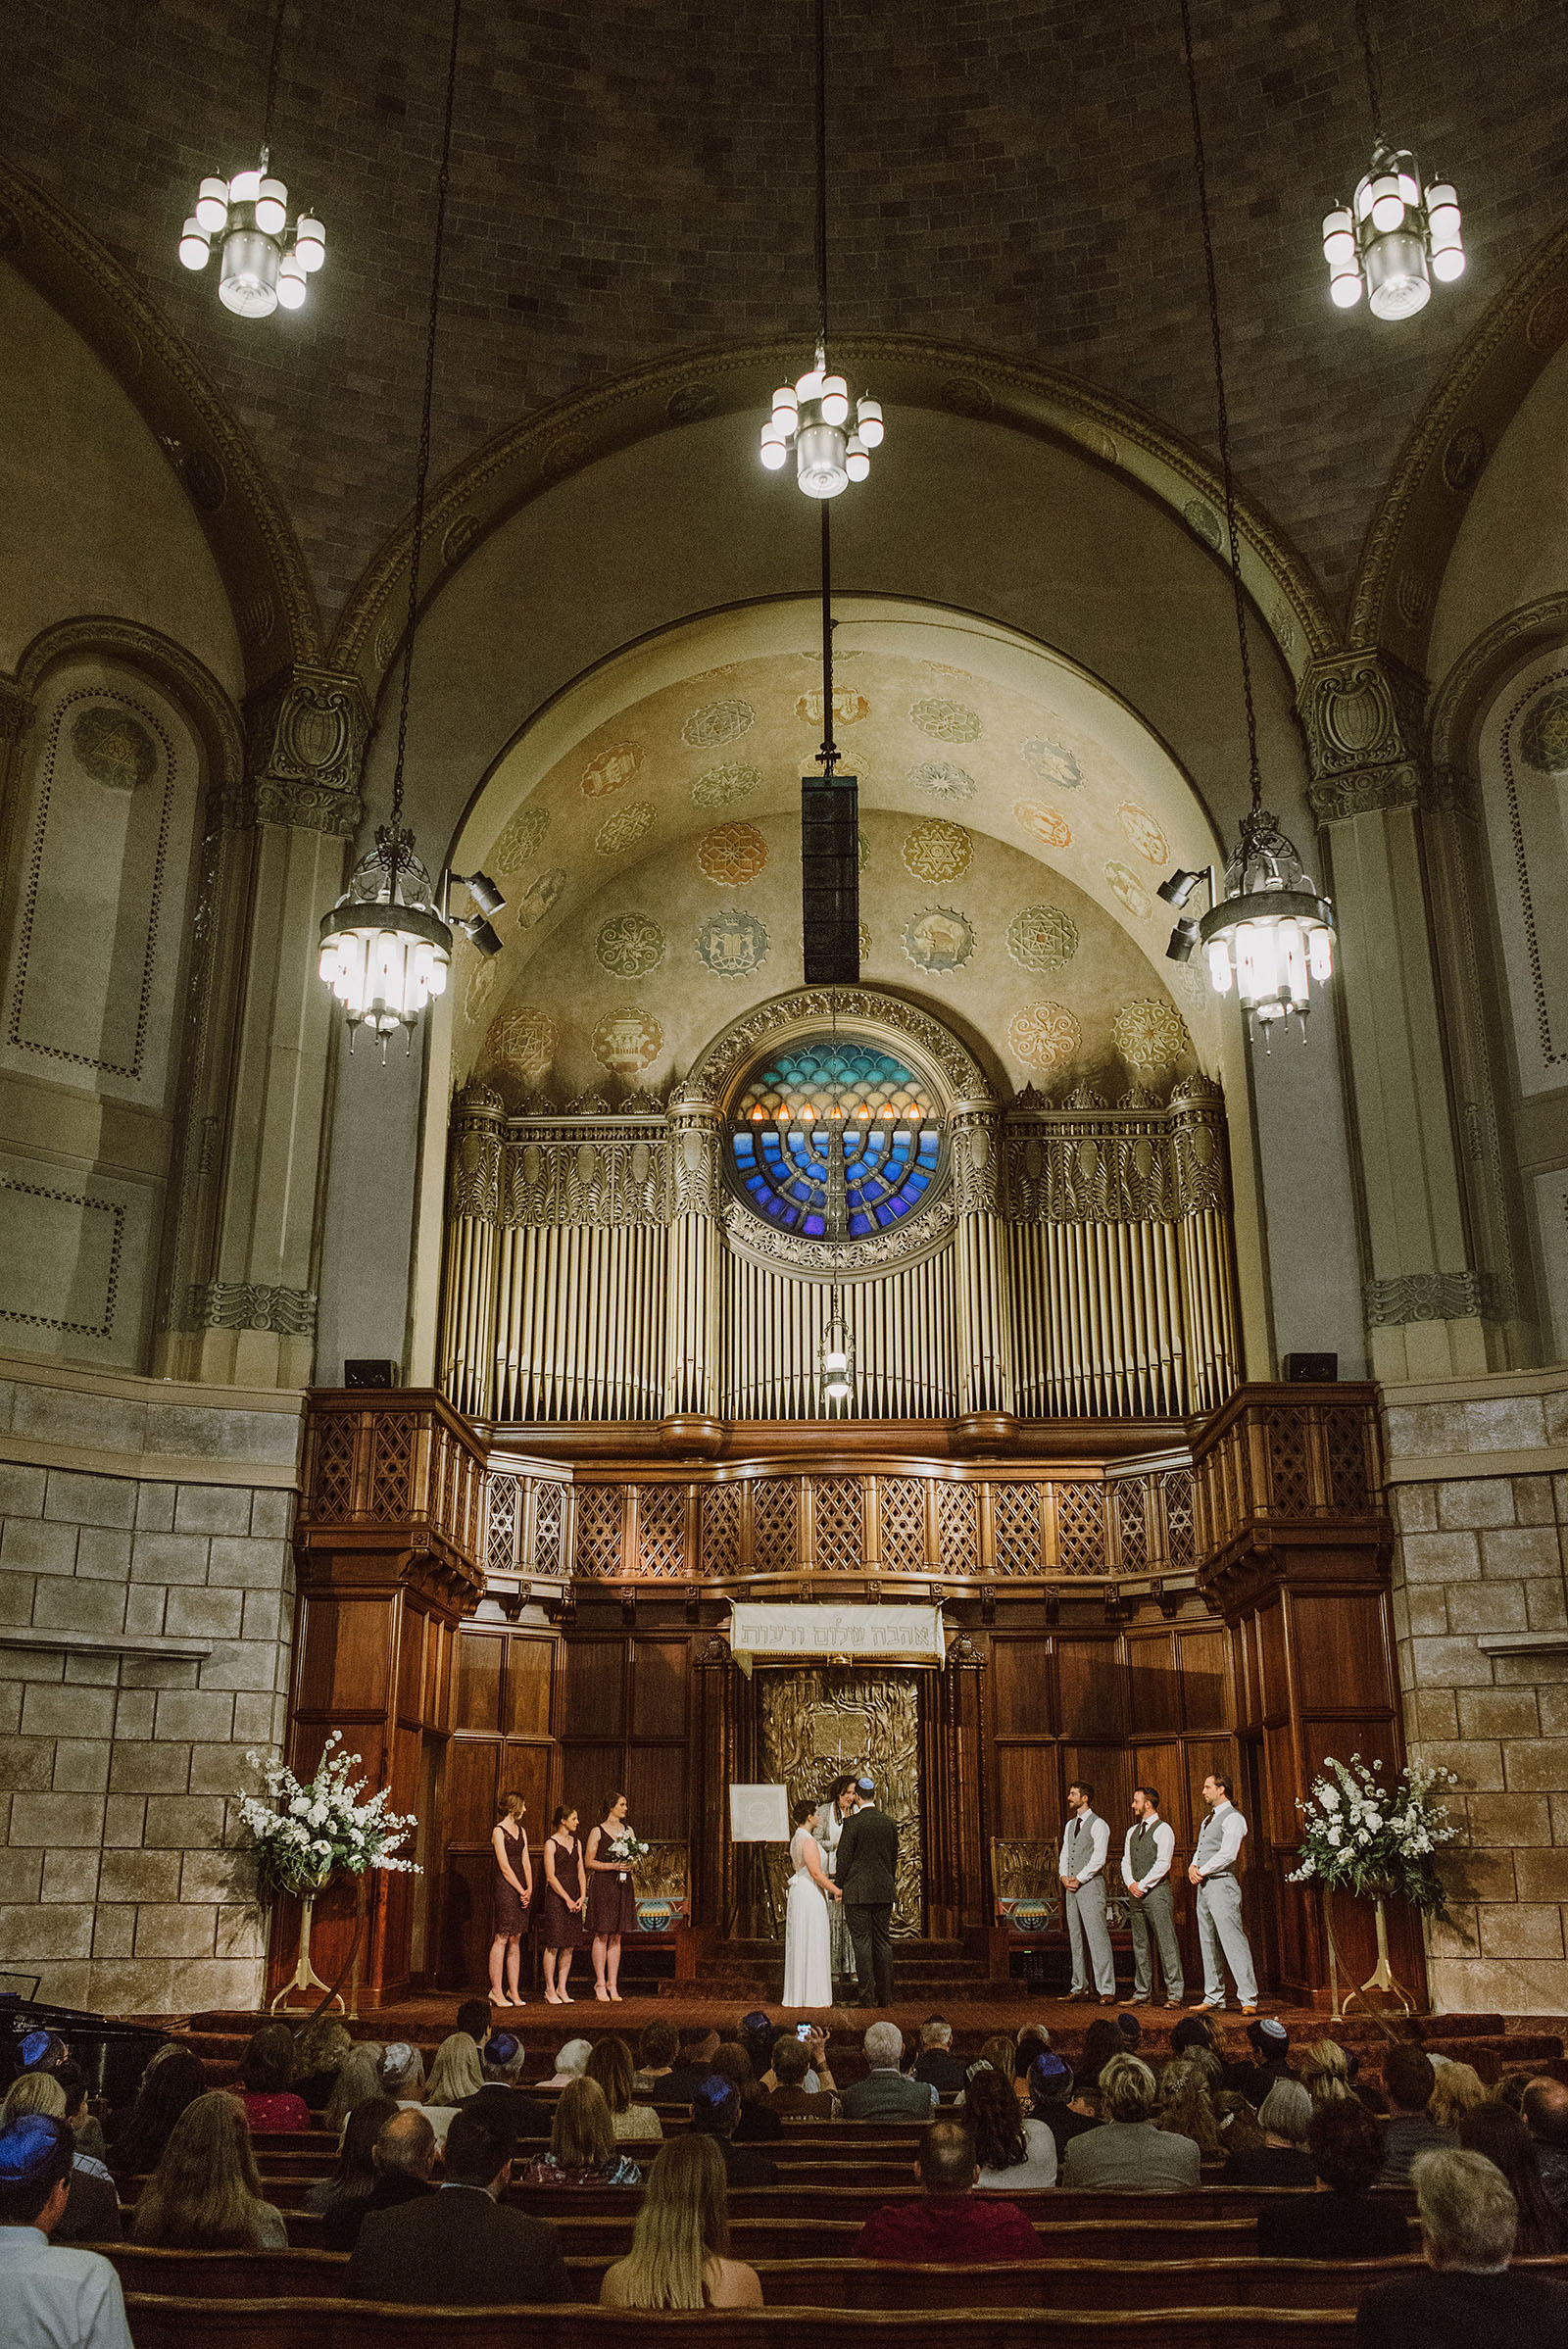 Congregation Beth Israel wedding ceremony